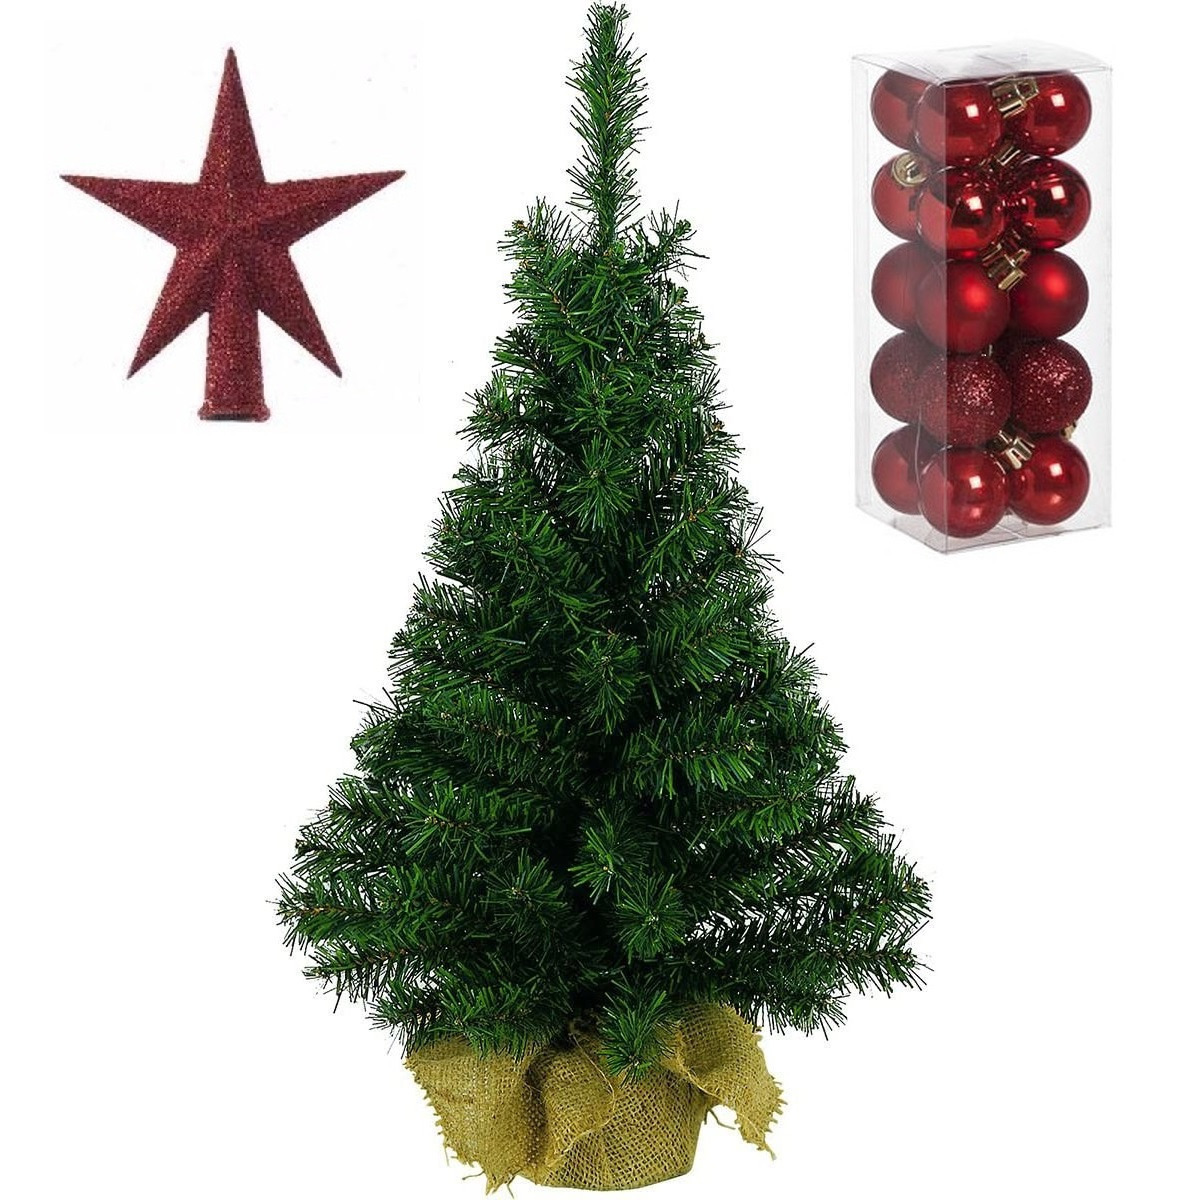 Volle kunst kerstboom 45 cm in jute zak inclusief rode versiering 21-delig